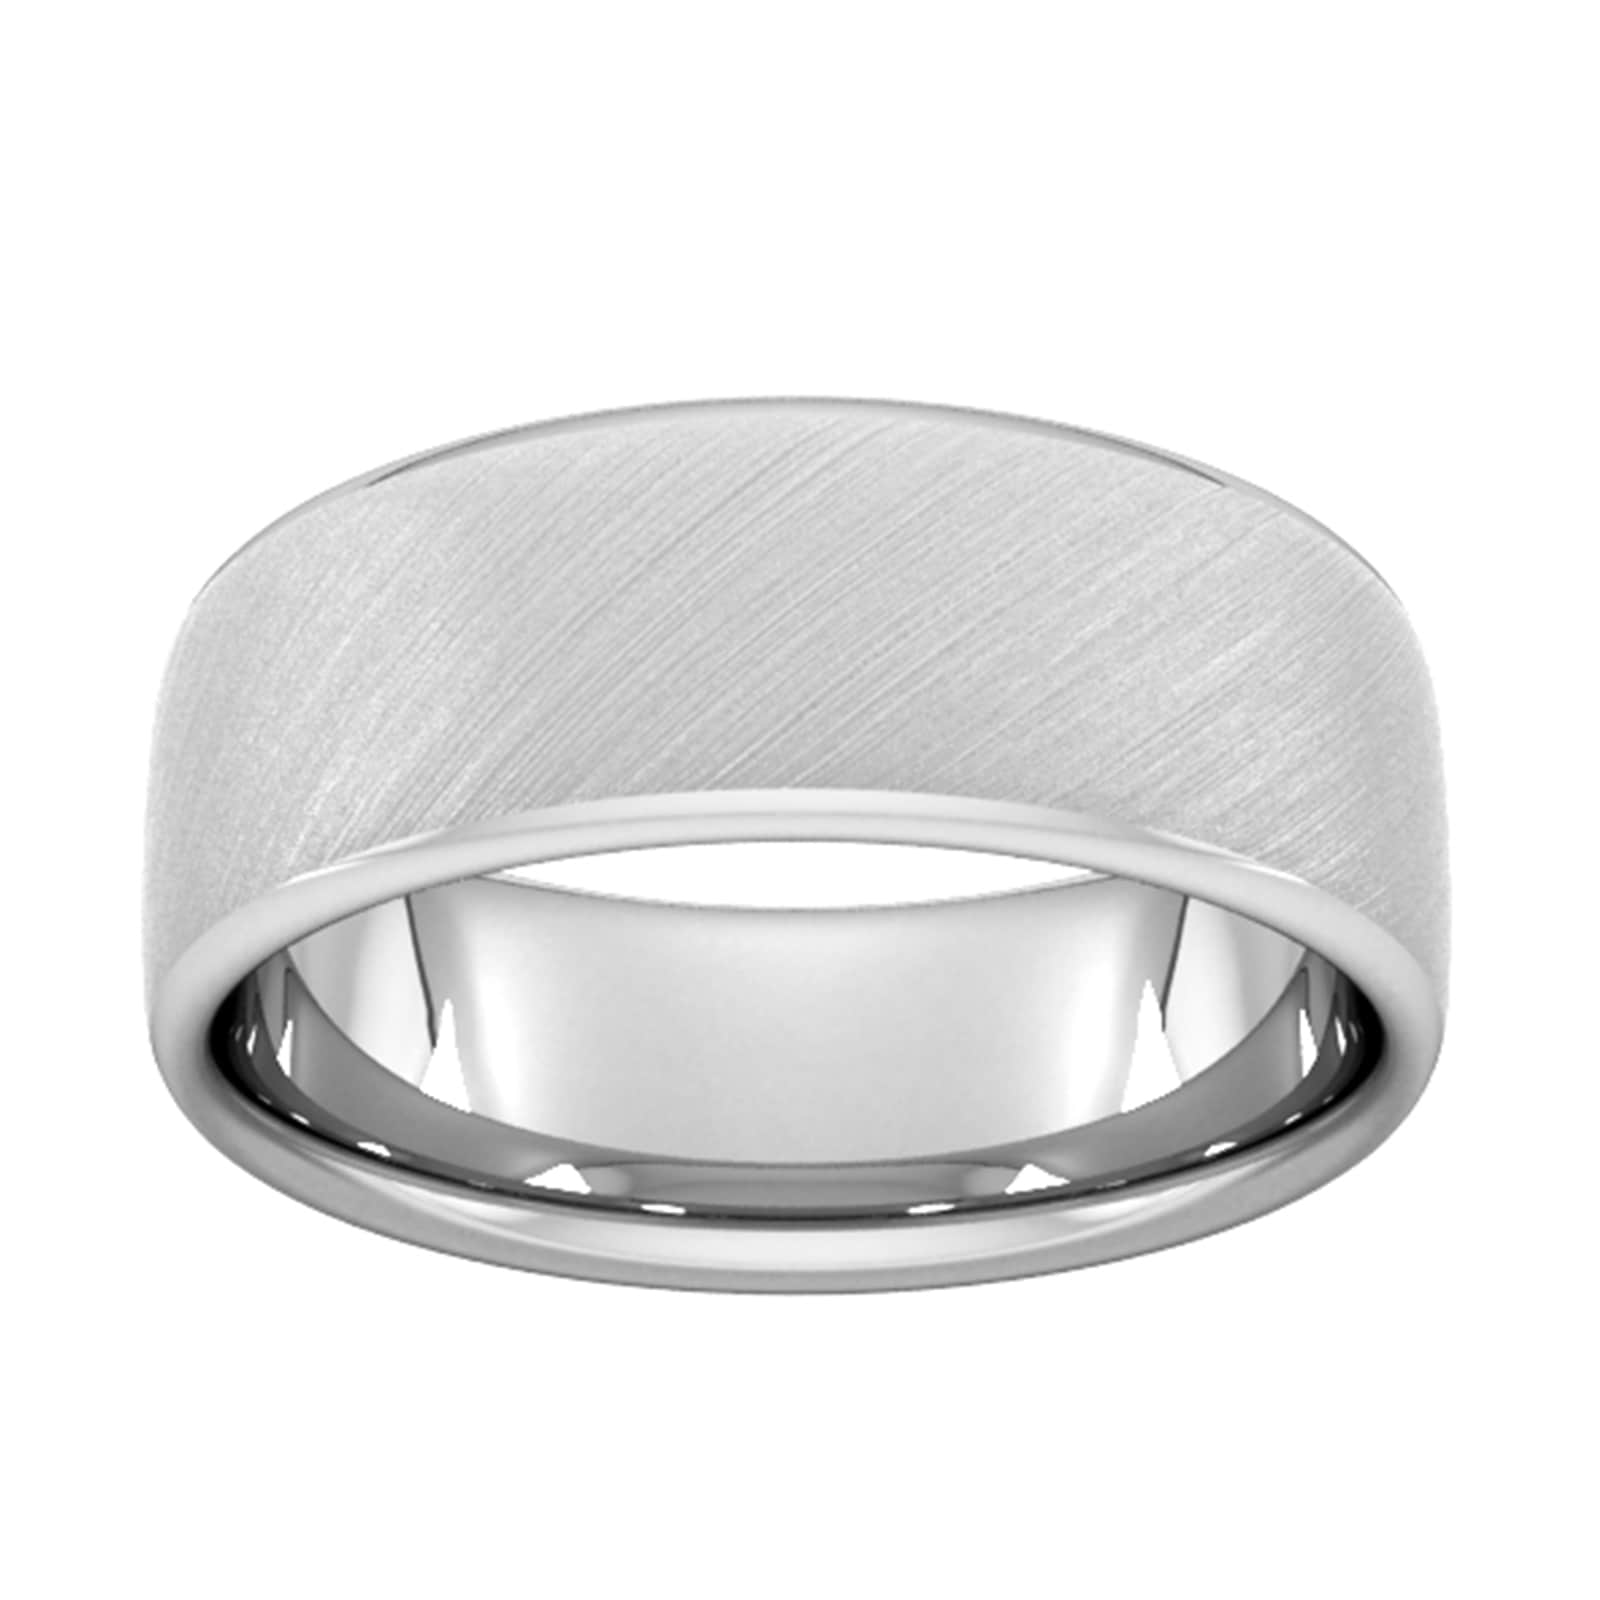 8mm Slight Court Standard Diagonal Matt Finish Wedding Ring In 950 Palladium - Ring Size G